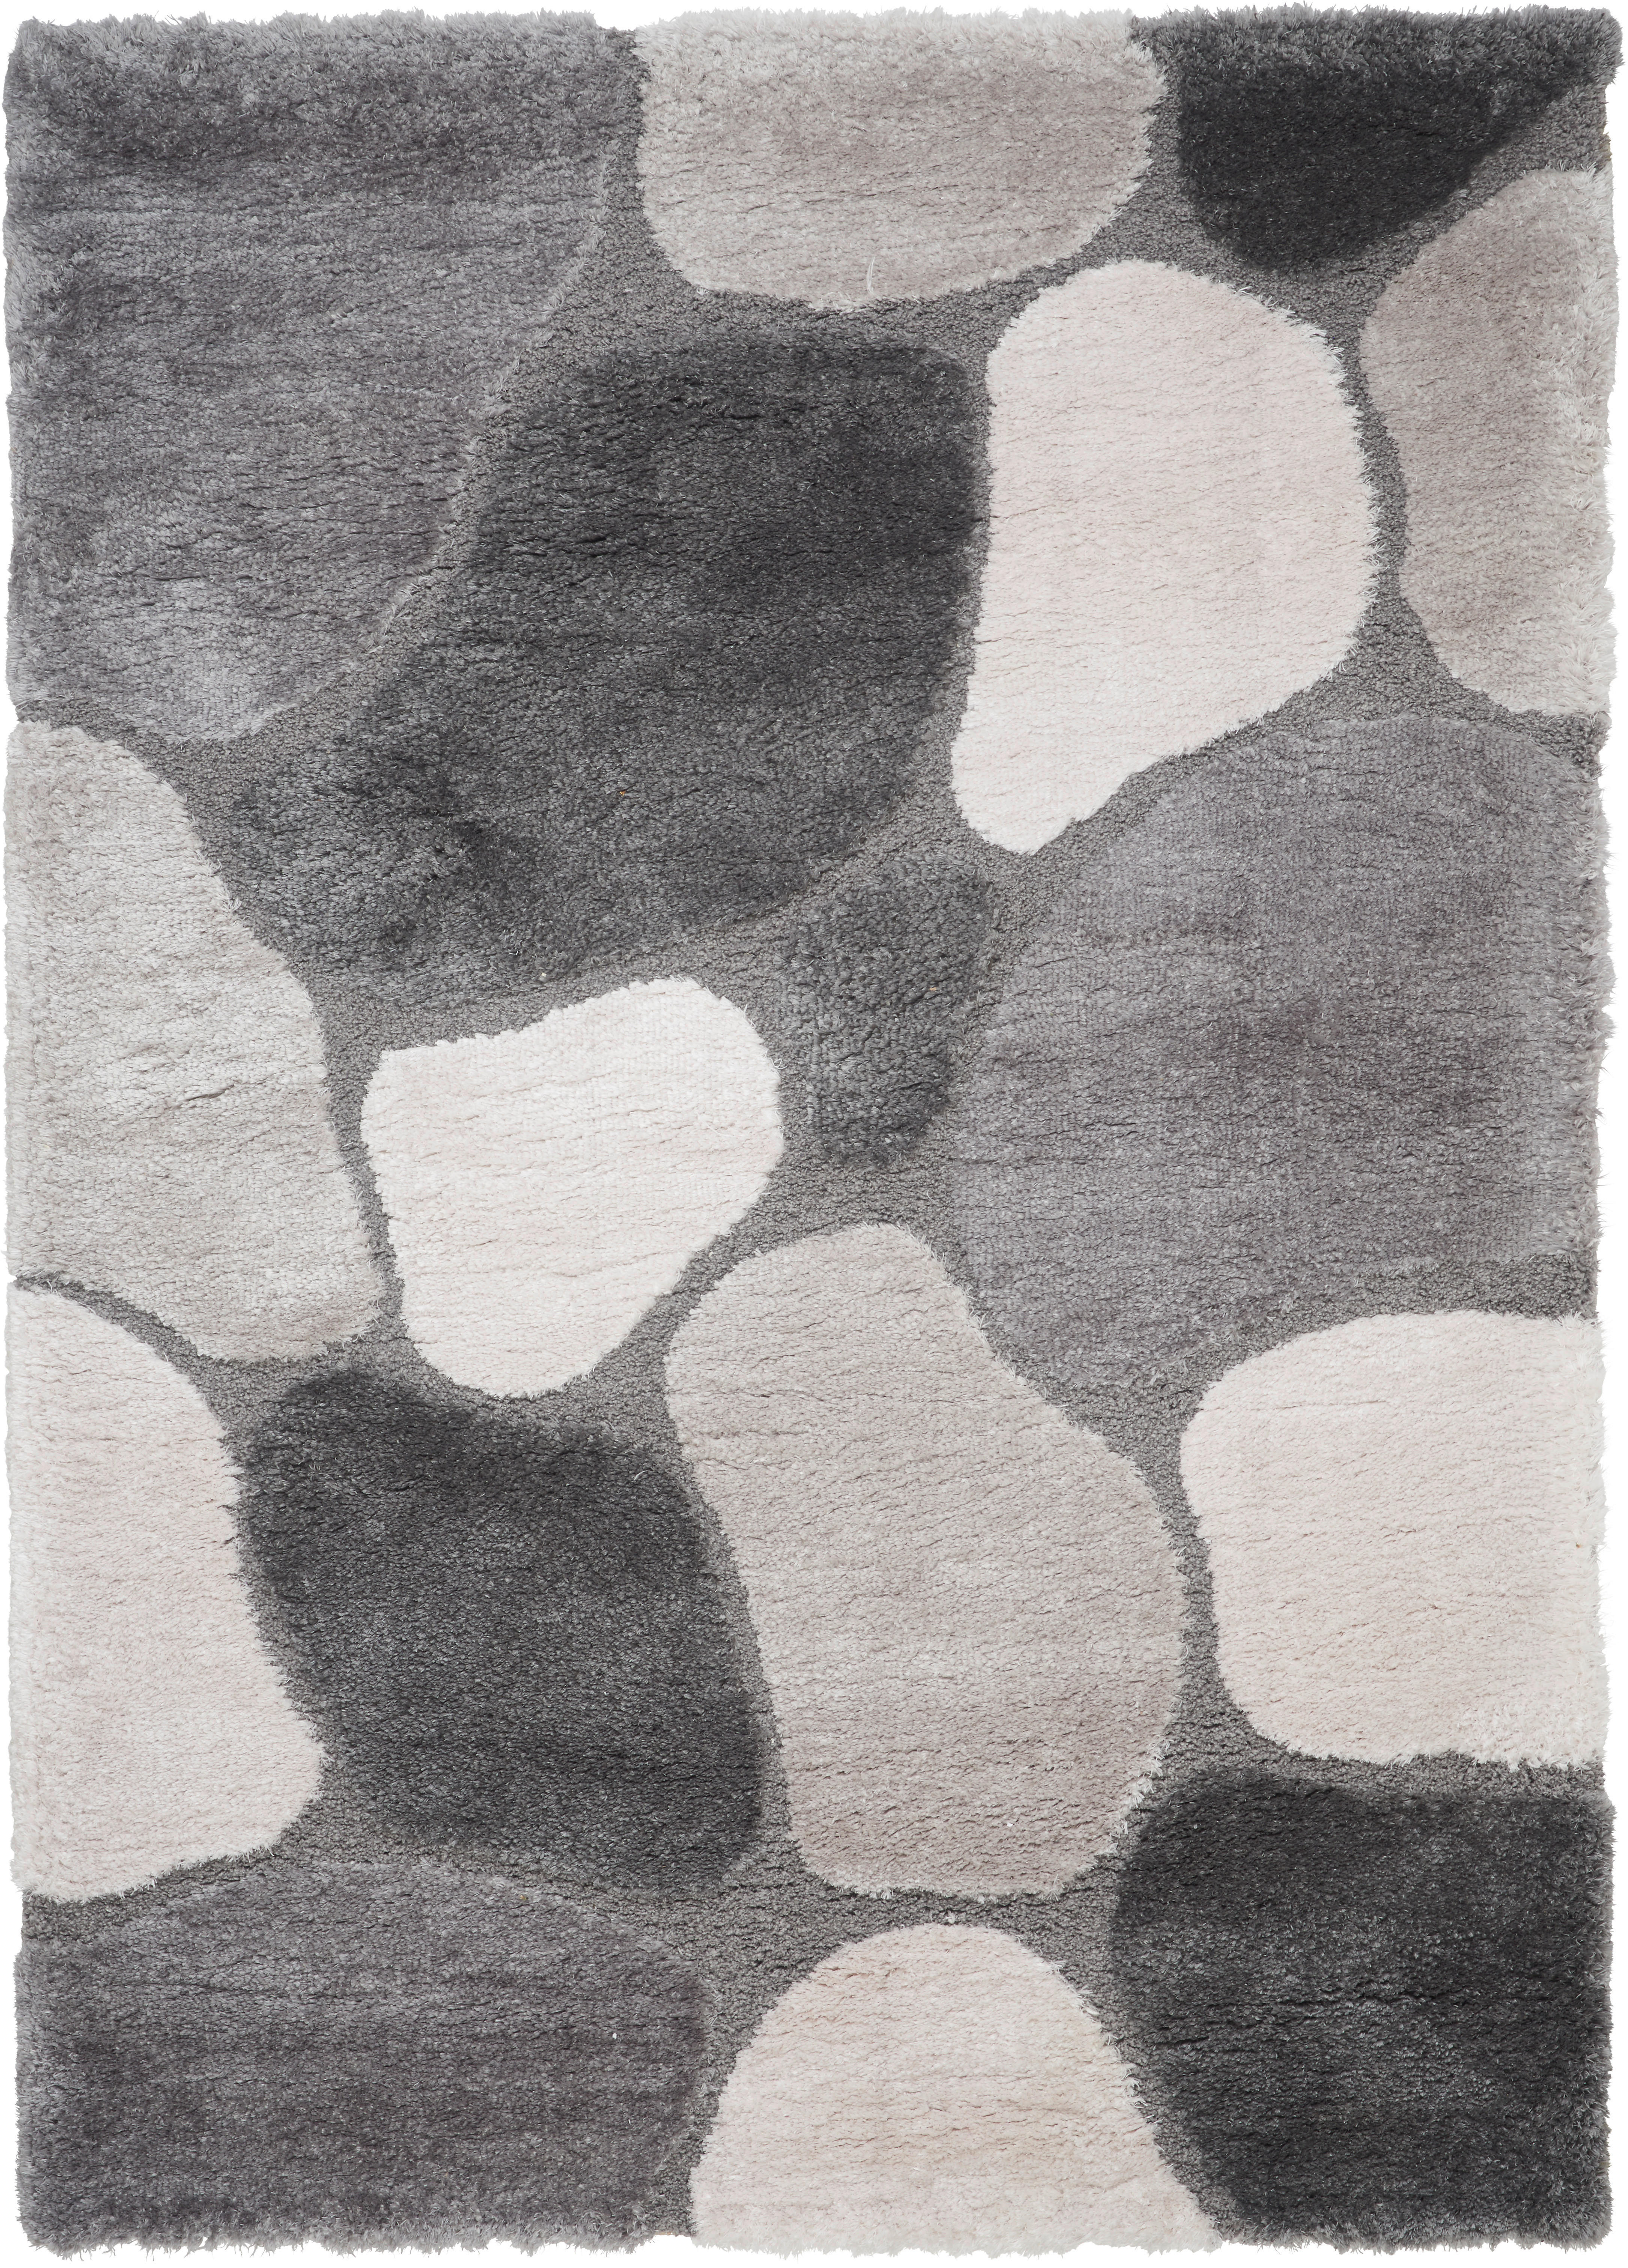 RYAMATTA Stoney Ponte  - grå, Trend, textil (80/150cm) - Novel